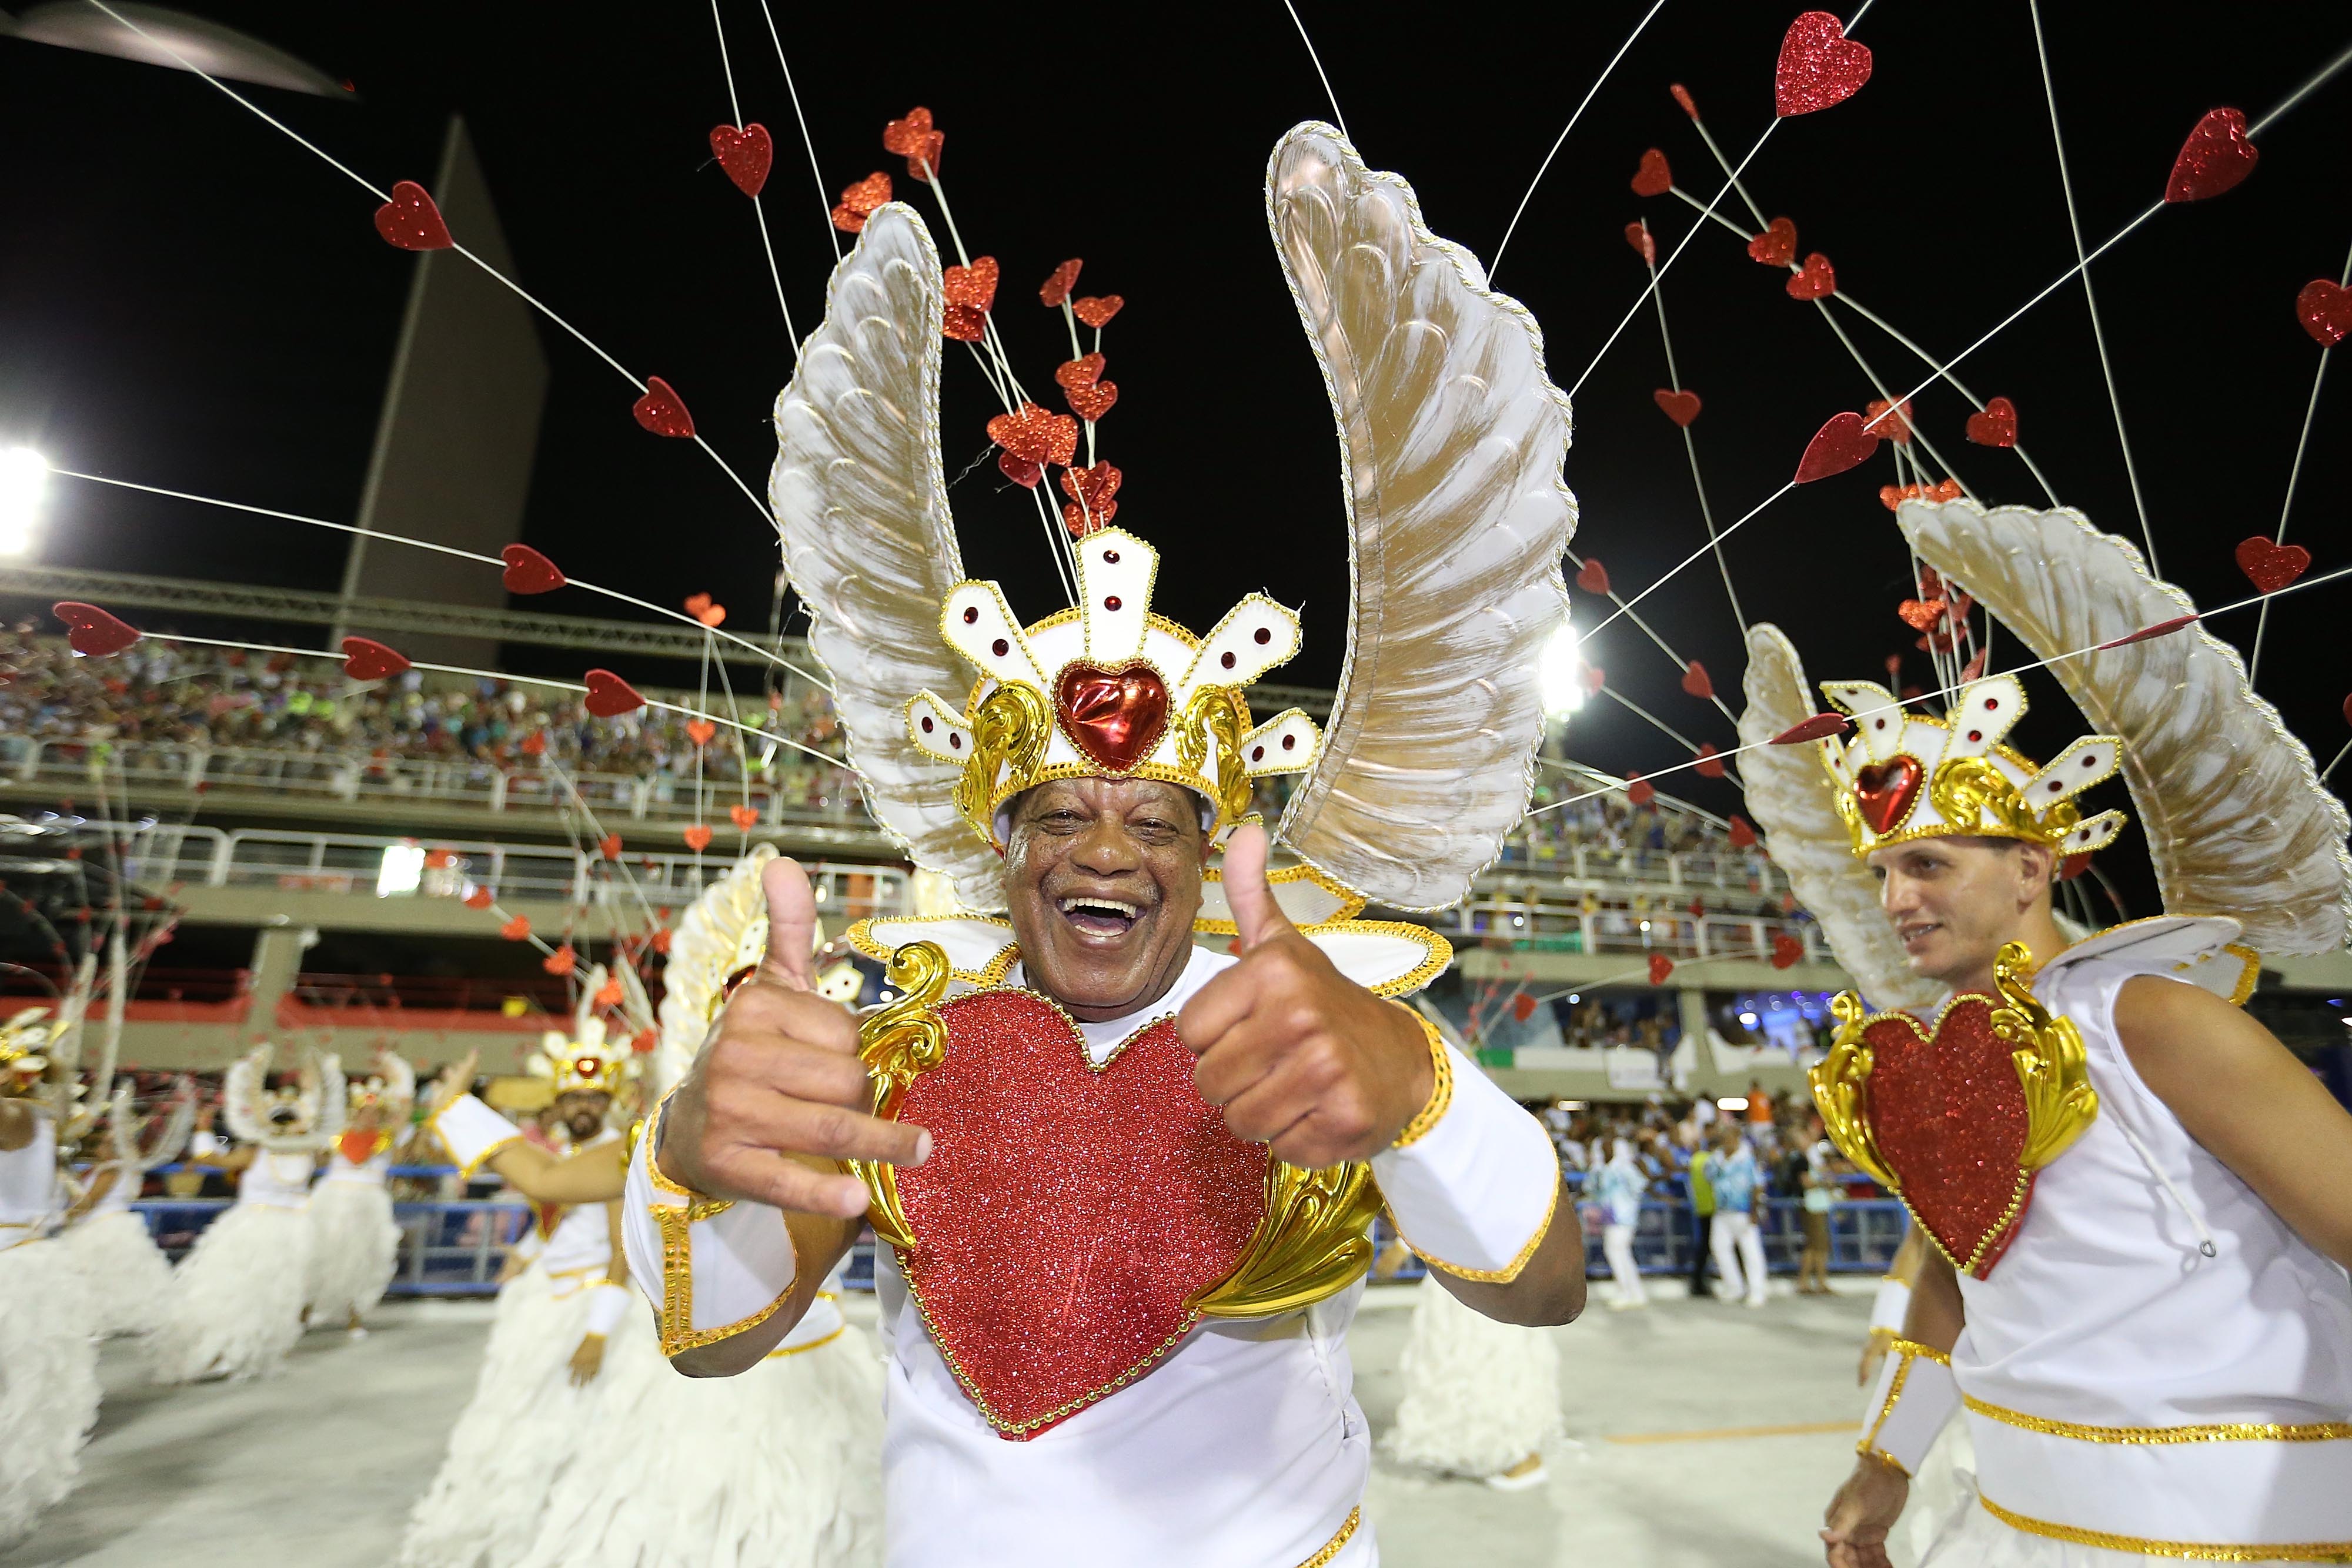 2月25日,在巴西里约热内卢,桑巴舞校的演员参加狂欢节游行.